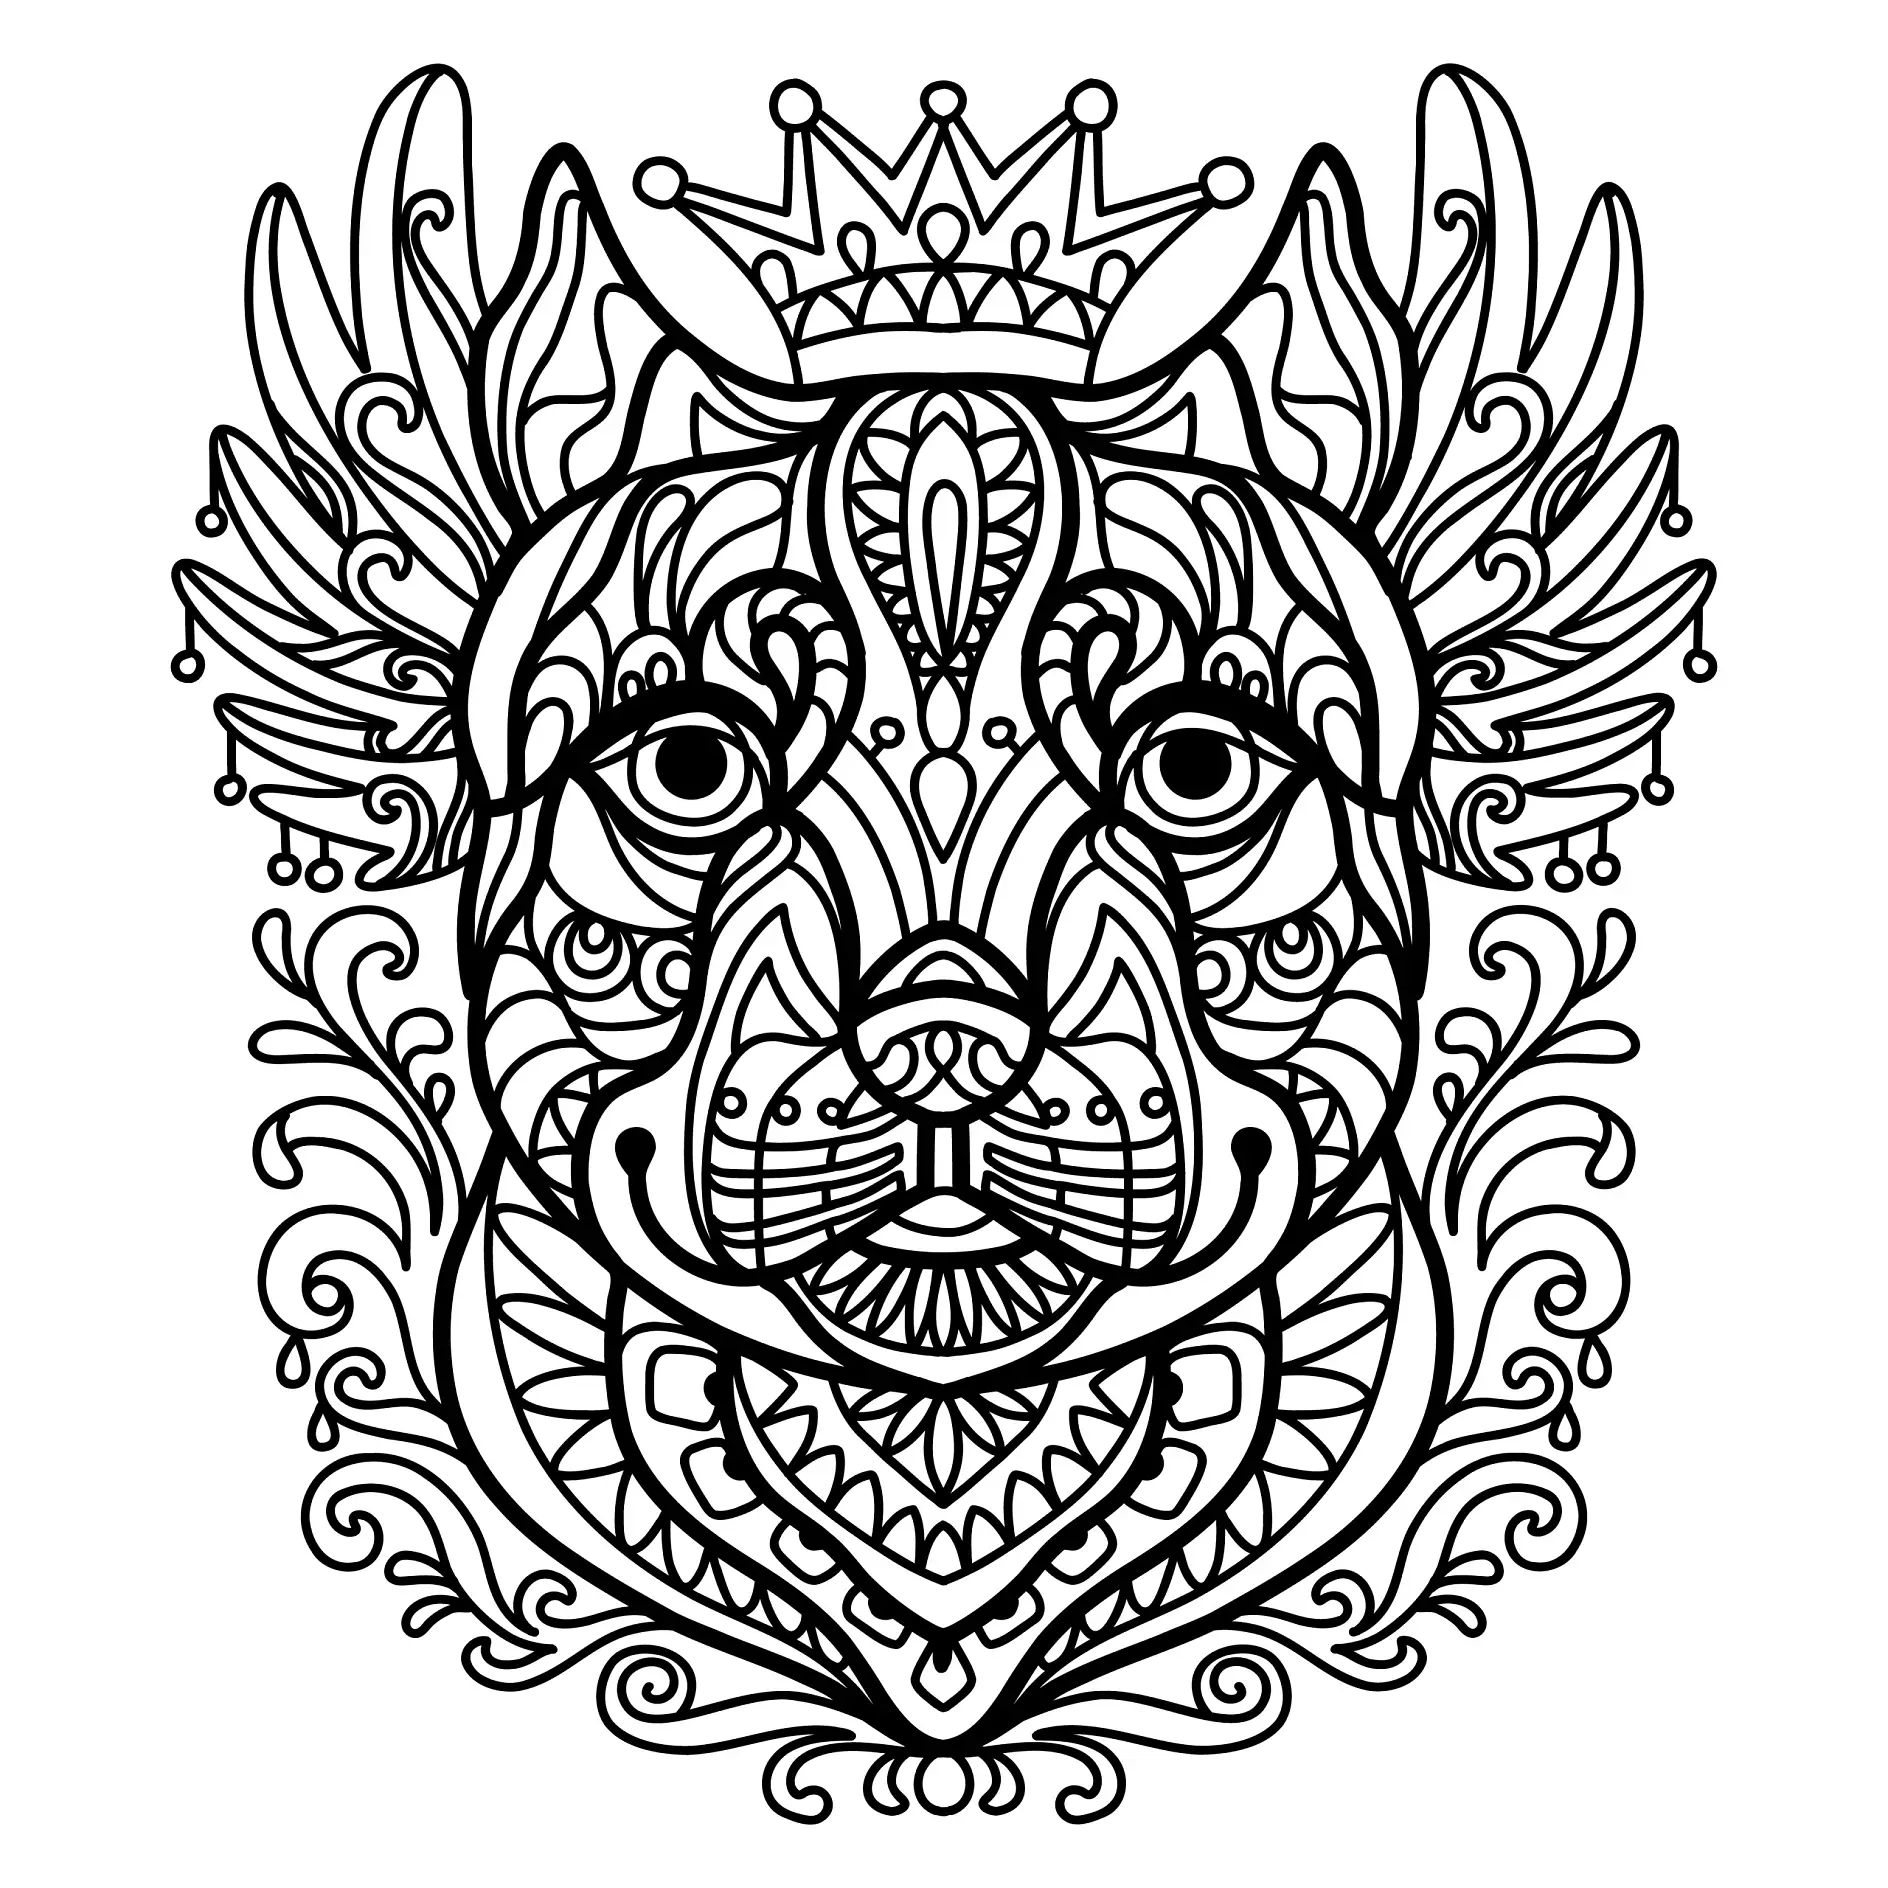 Ausmalbild Mandala mit Hund und Krone und floralen Mustern